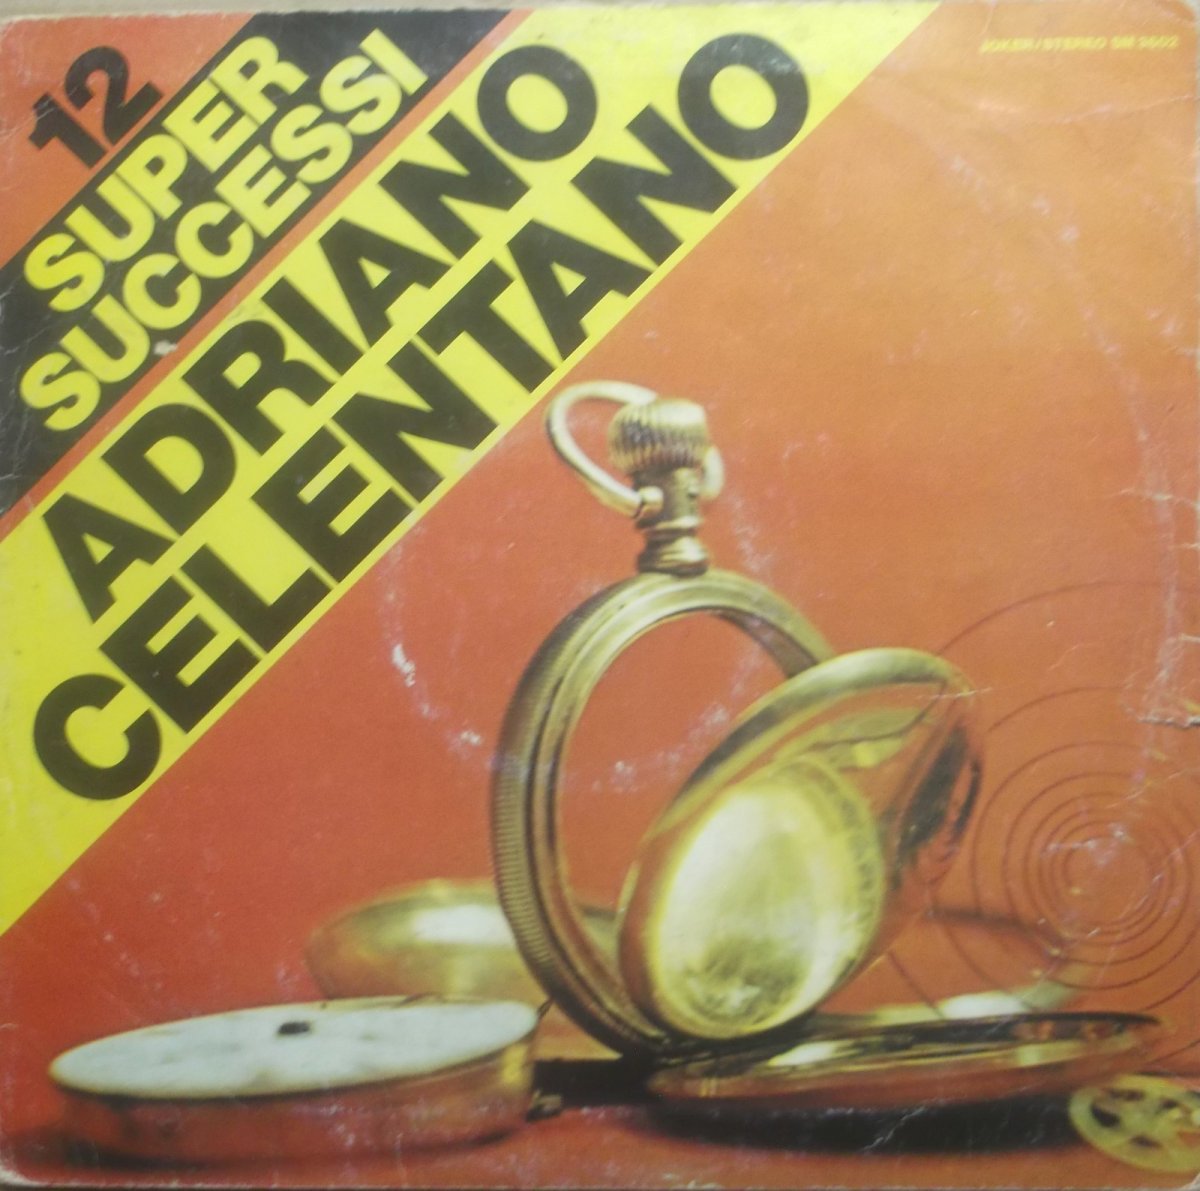 Adriano Celentano – 12 Supersuccessi